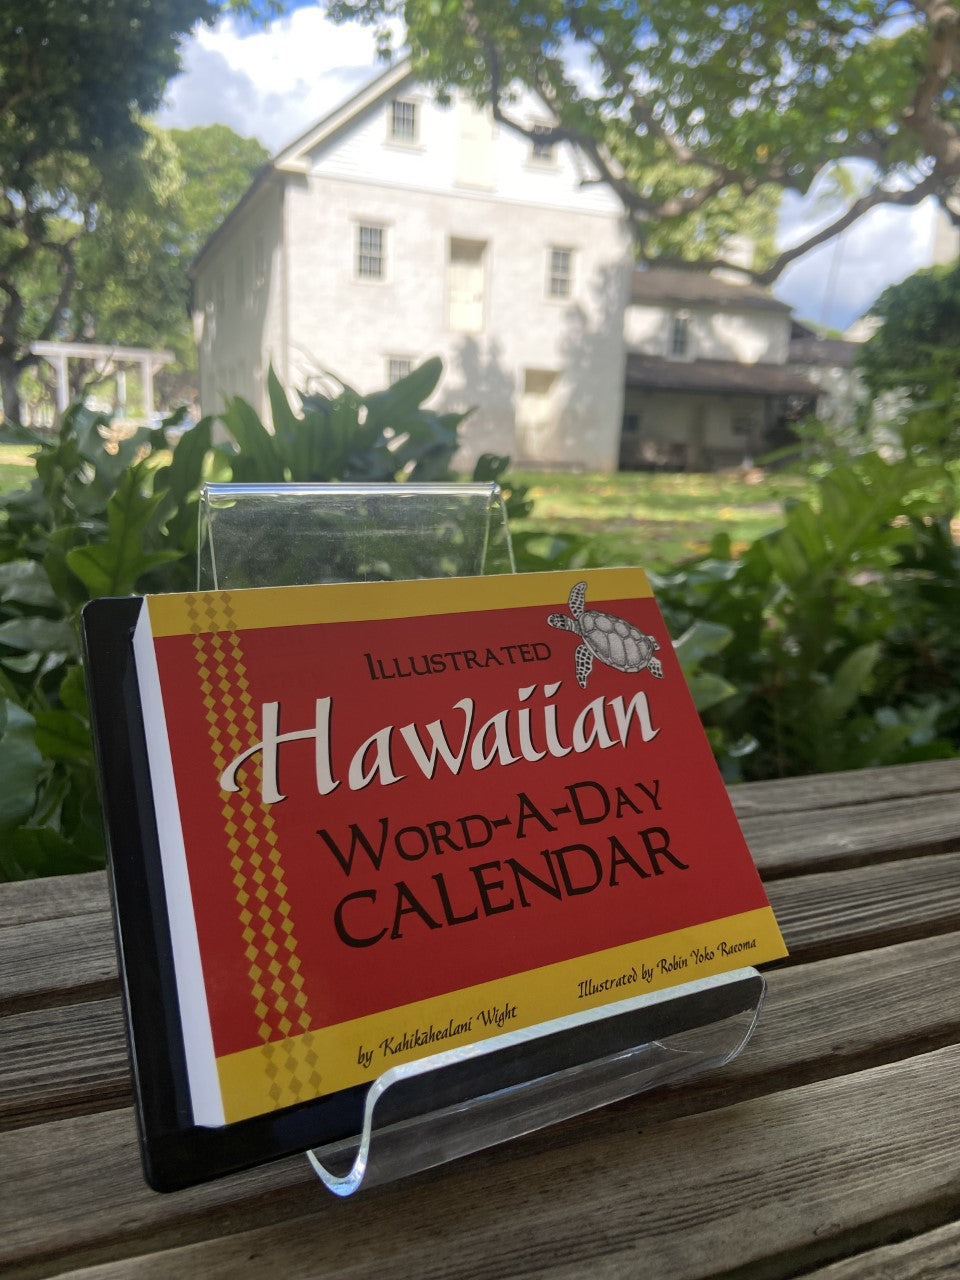 Hawaiian Word A Day Calendar